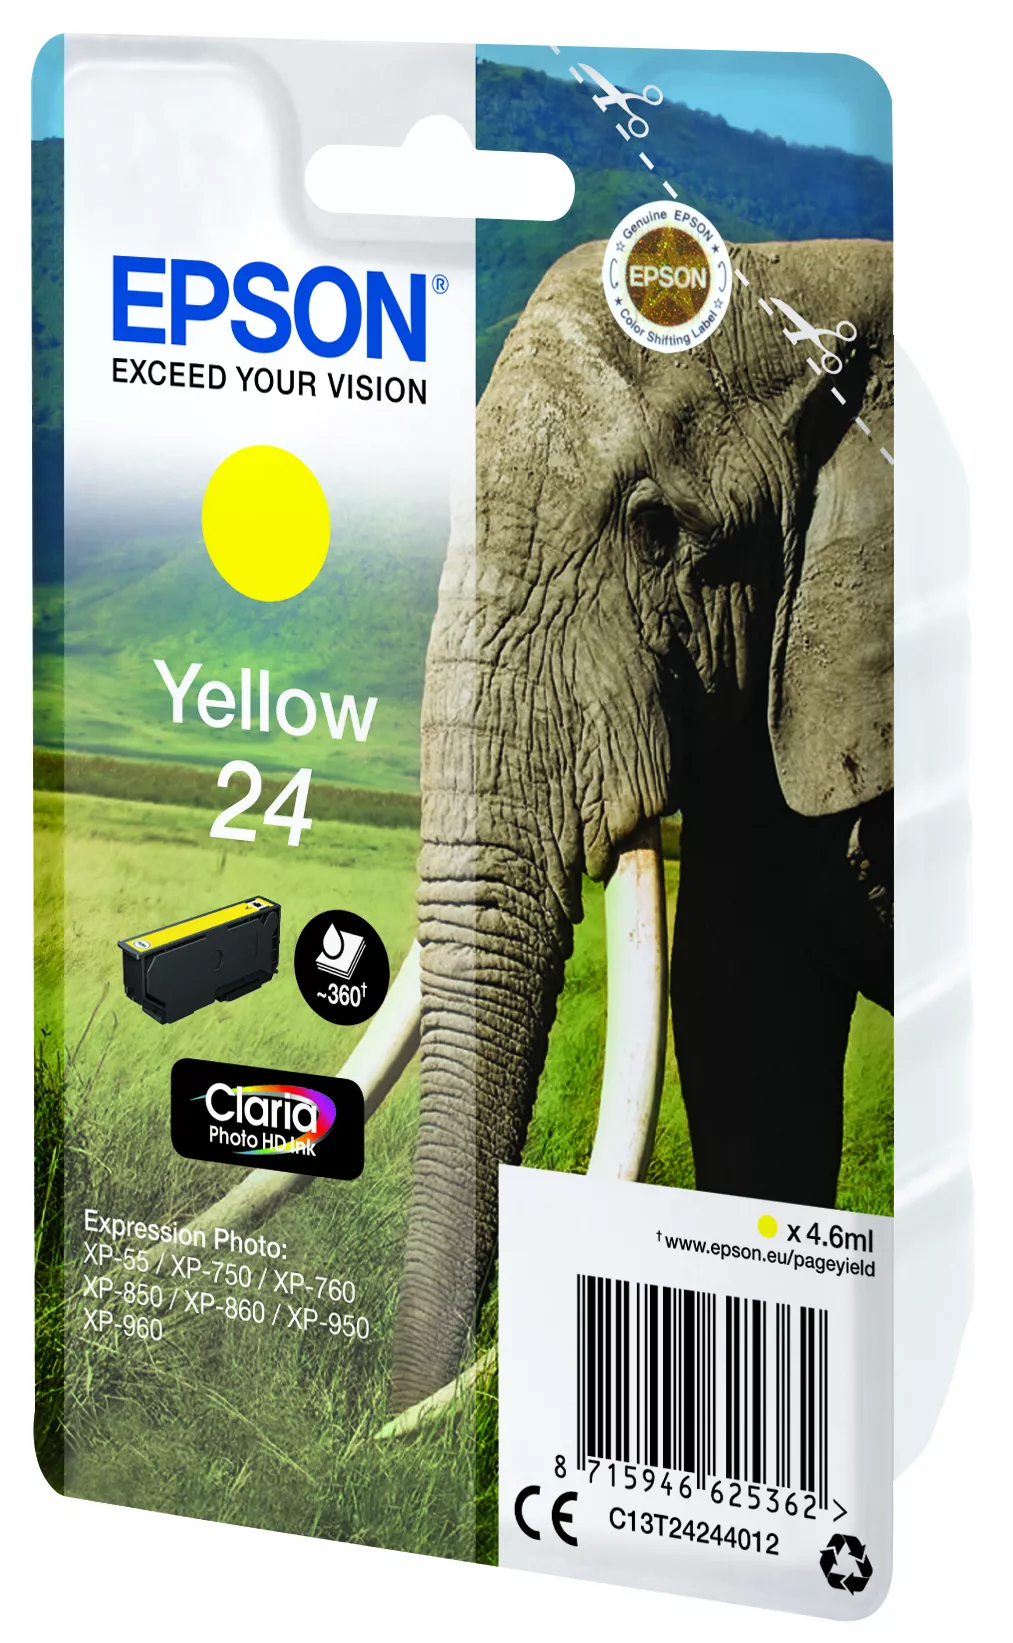 Vente EPSON 24 cartouche encre jaune capacité standard 4.6ml Epson au meilleur prix - visuel 4